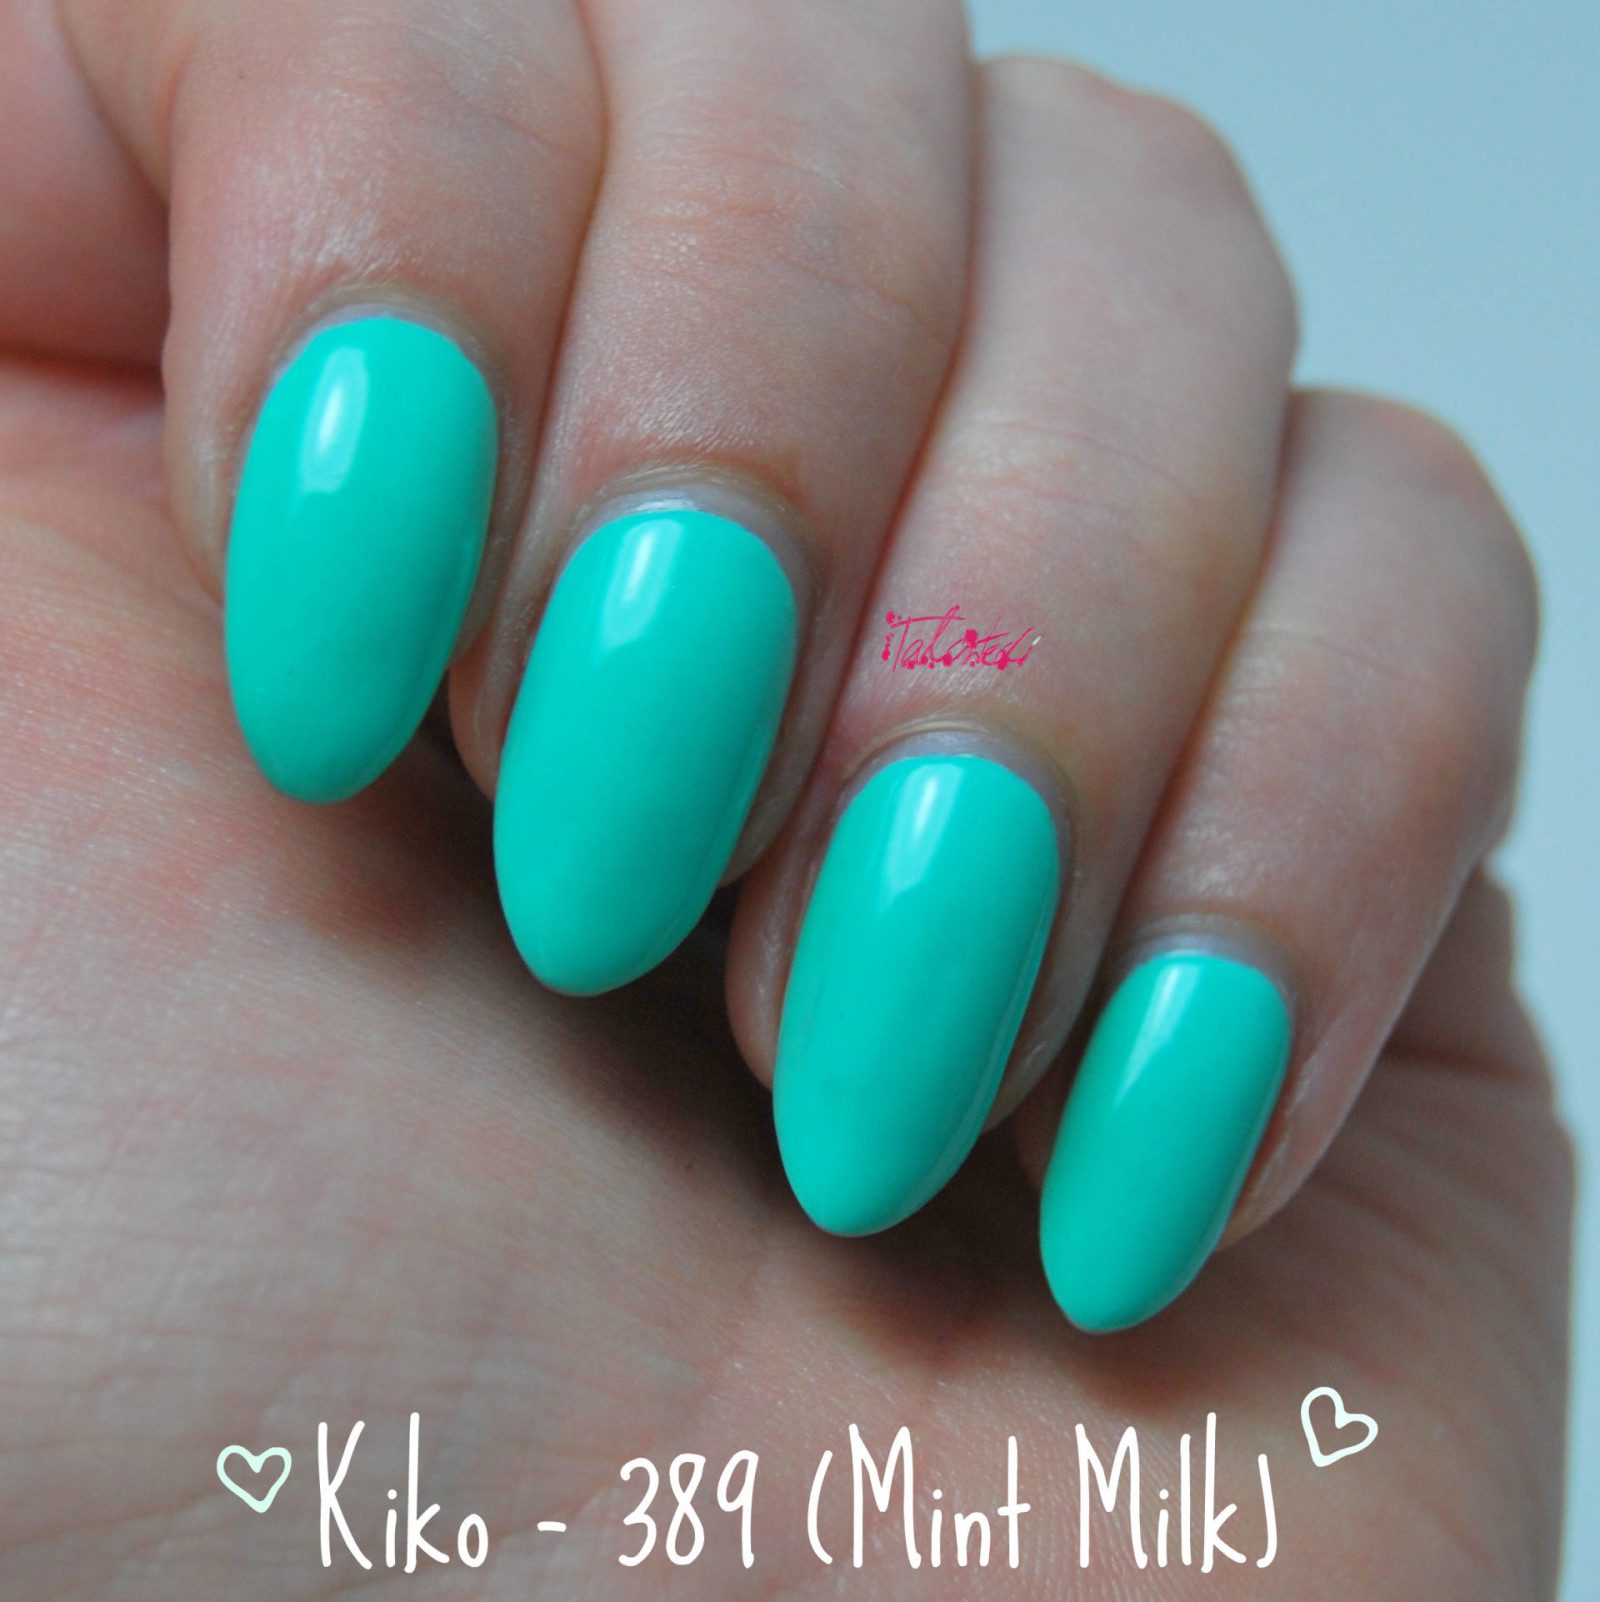 Kiko 389 Mint Milk Review